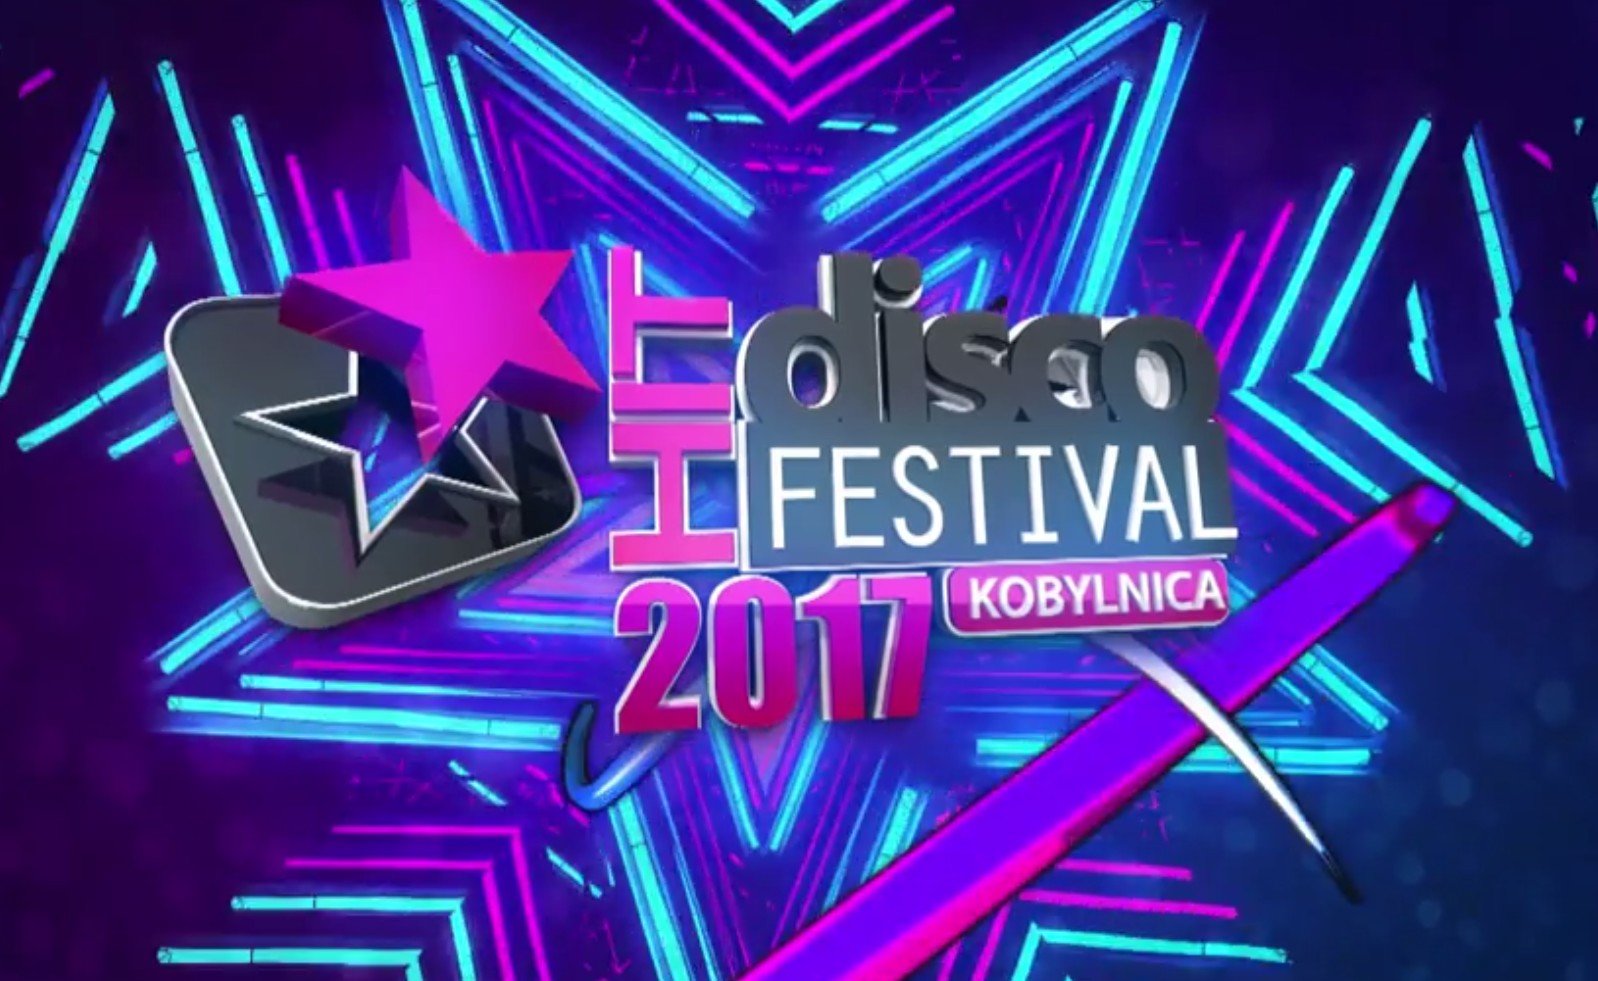 Już dziś Disco Hit Festival Kobylnica 2017 - Podajemy listę zespołów oraz informację o transmisji LIVE!